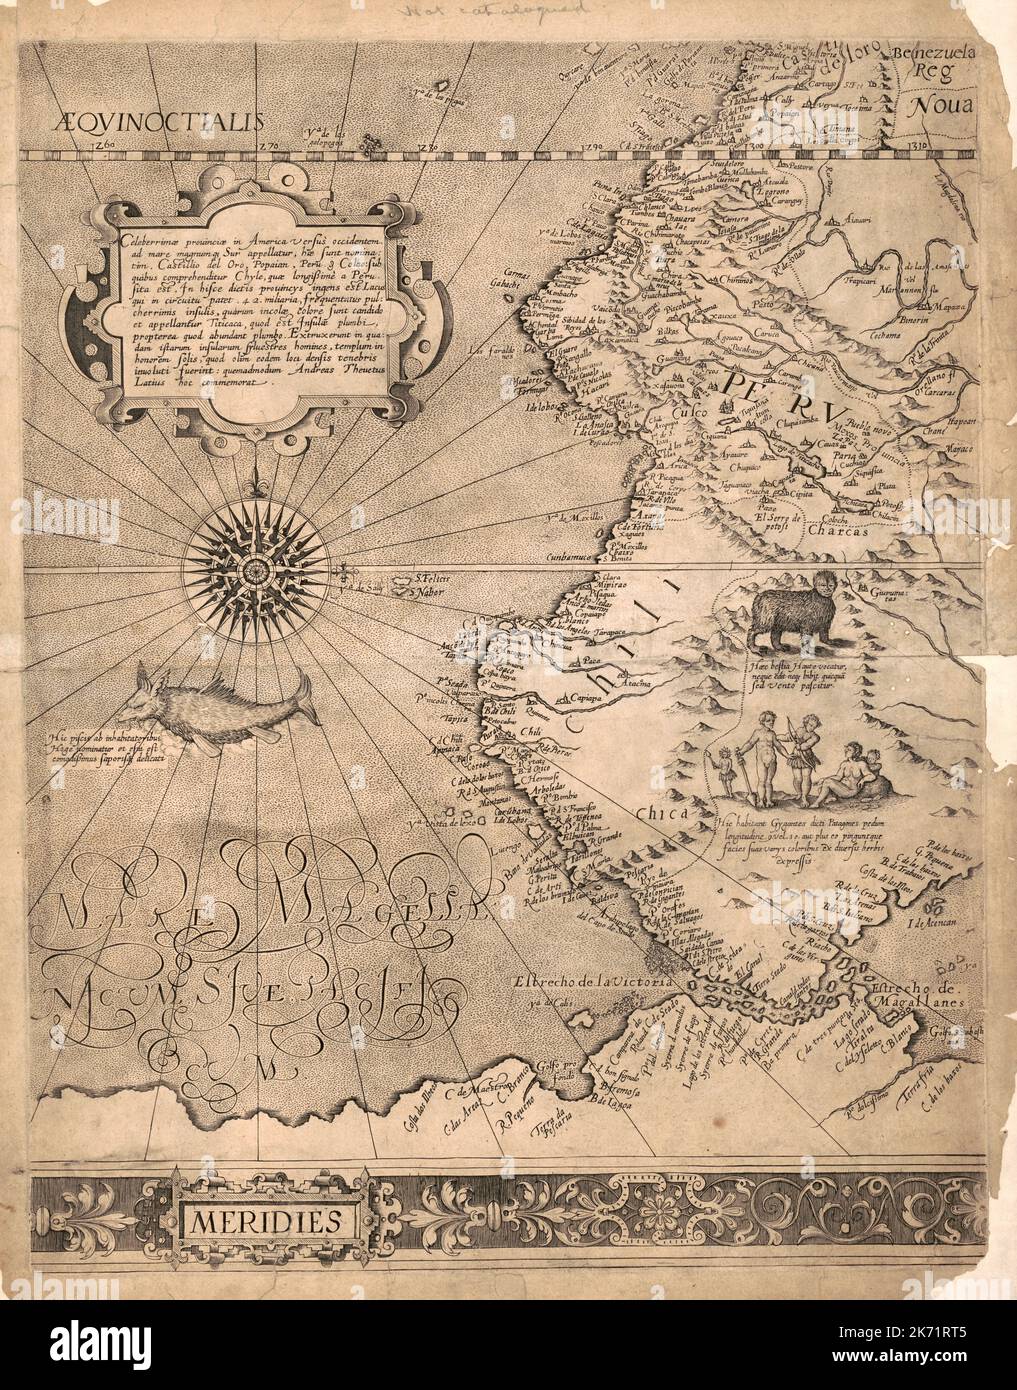 Carte du Pérou et de l'ouest de l'Amérique du Sud, peut-être 1569, attribuée à Gerardus Mercator, 1512-1594. Banque D'Images